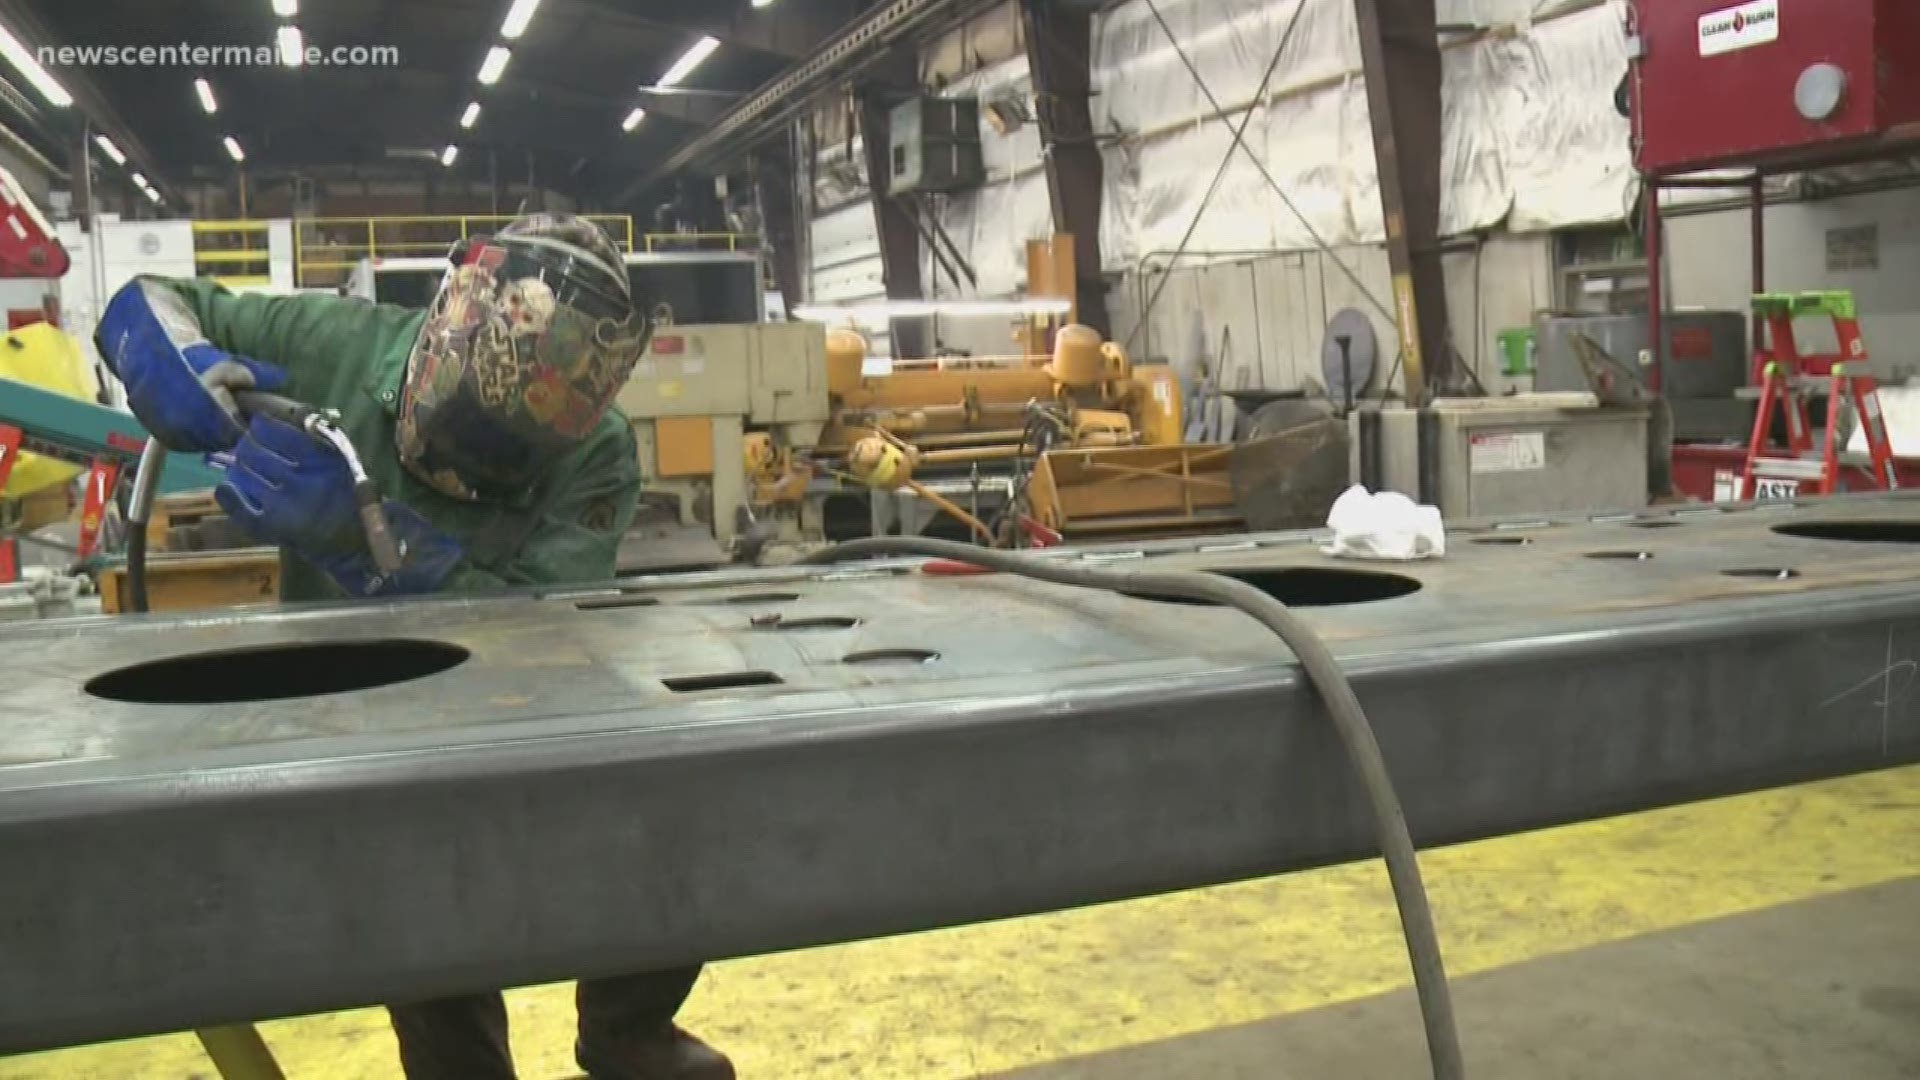 Local welder breaks down gender barriers in her trades career